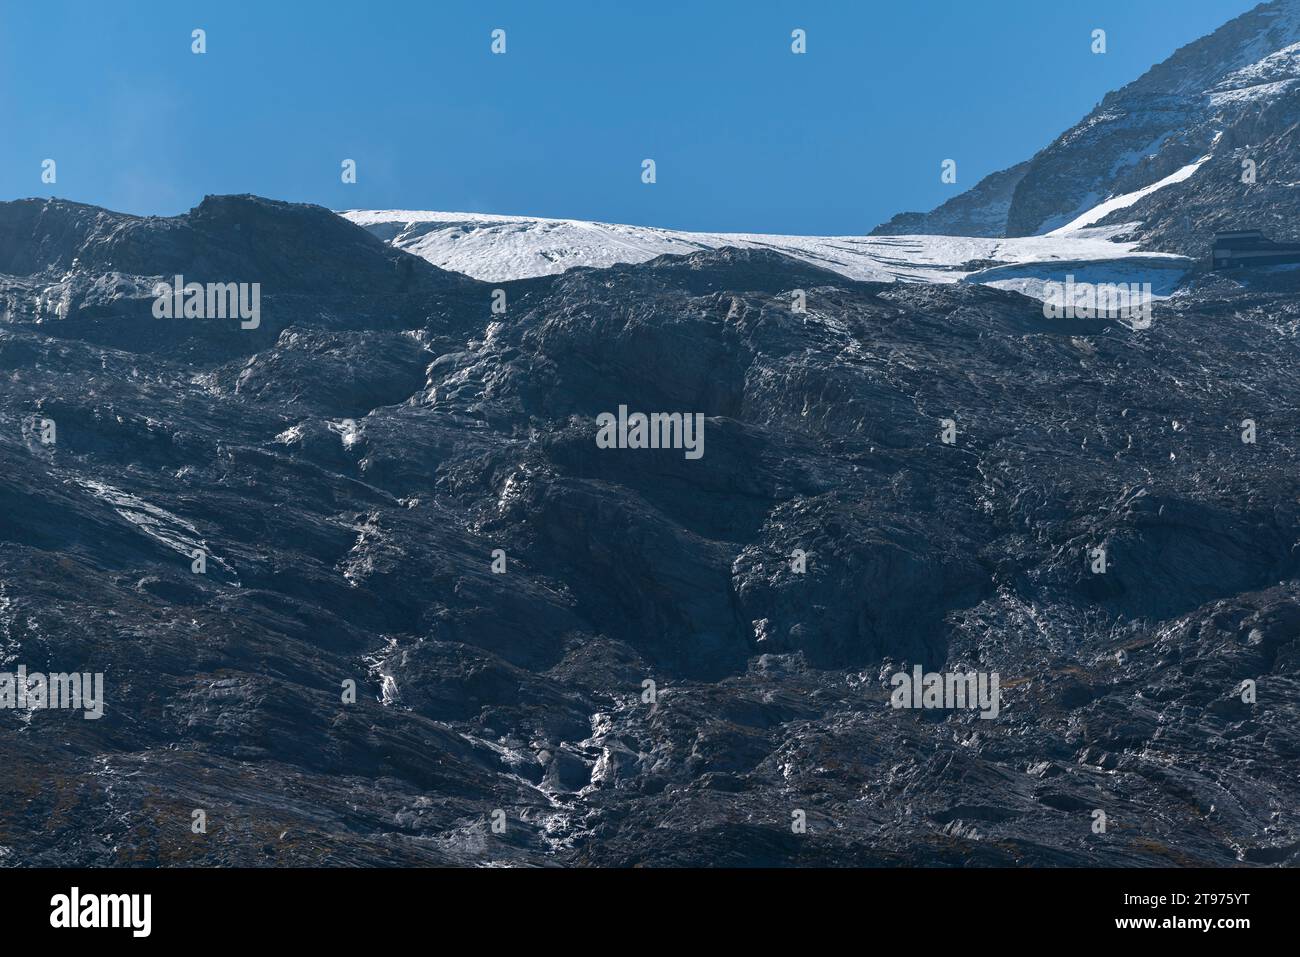 Hintertux Glacier Express, interescale à Sommerbergalm (2,200m) , région de randonnée populaire, Alpes de Zillertal, Tyrol, Autriche, Europe Banque D'Images